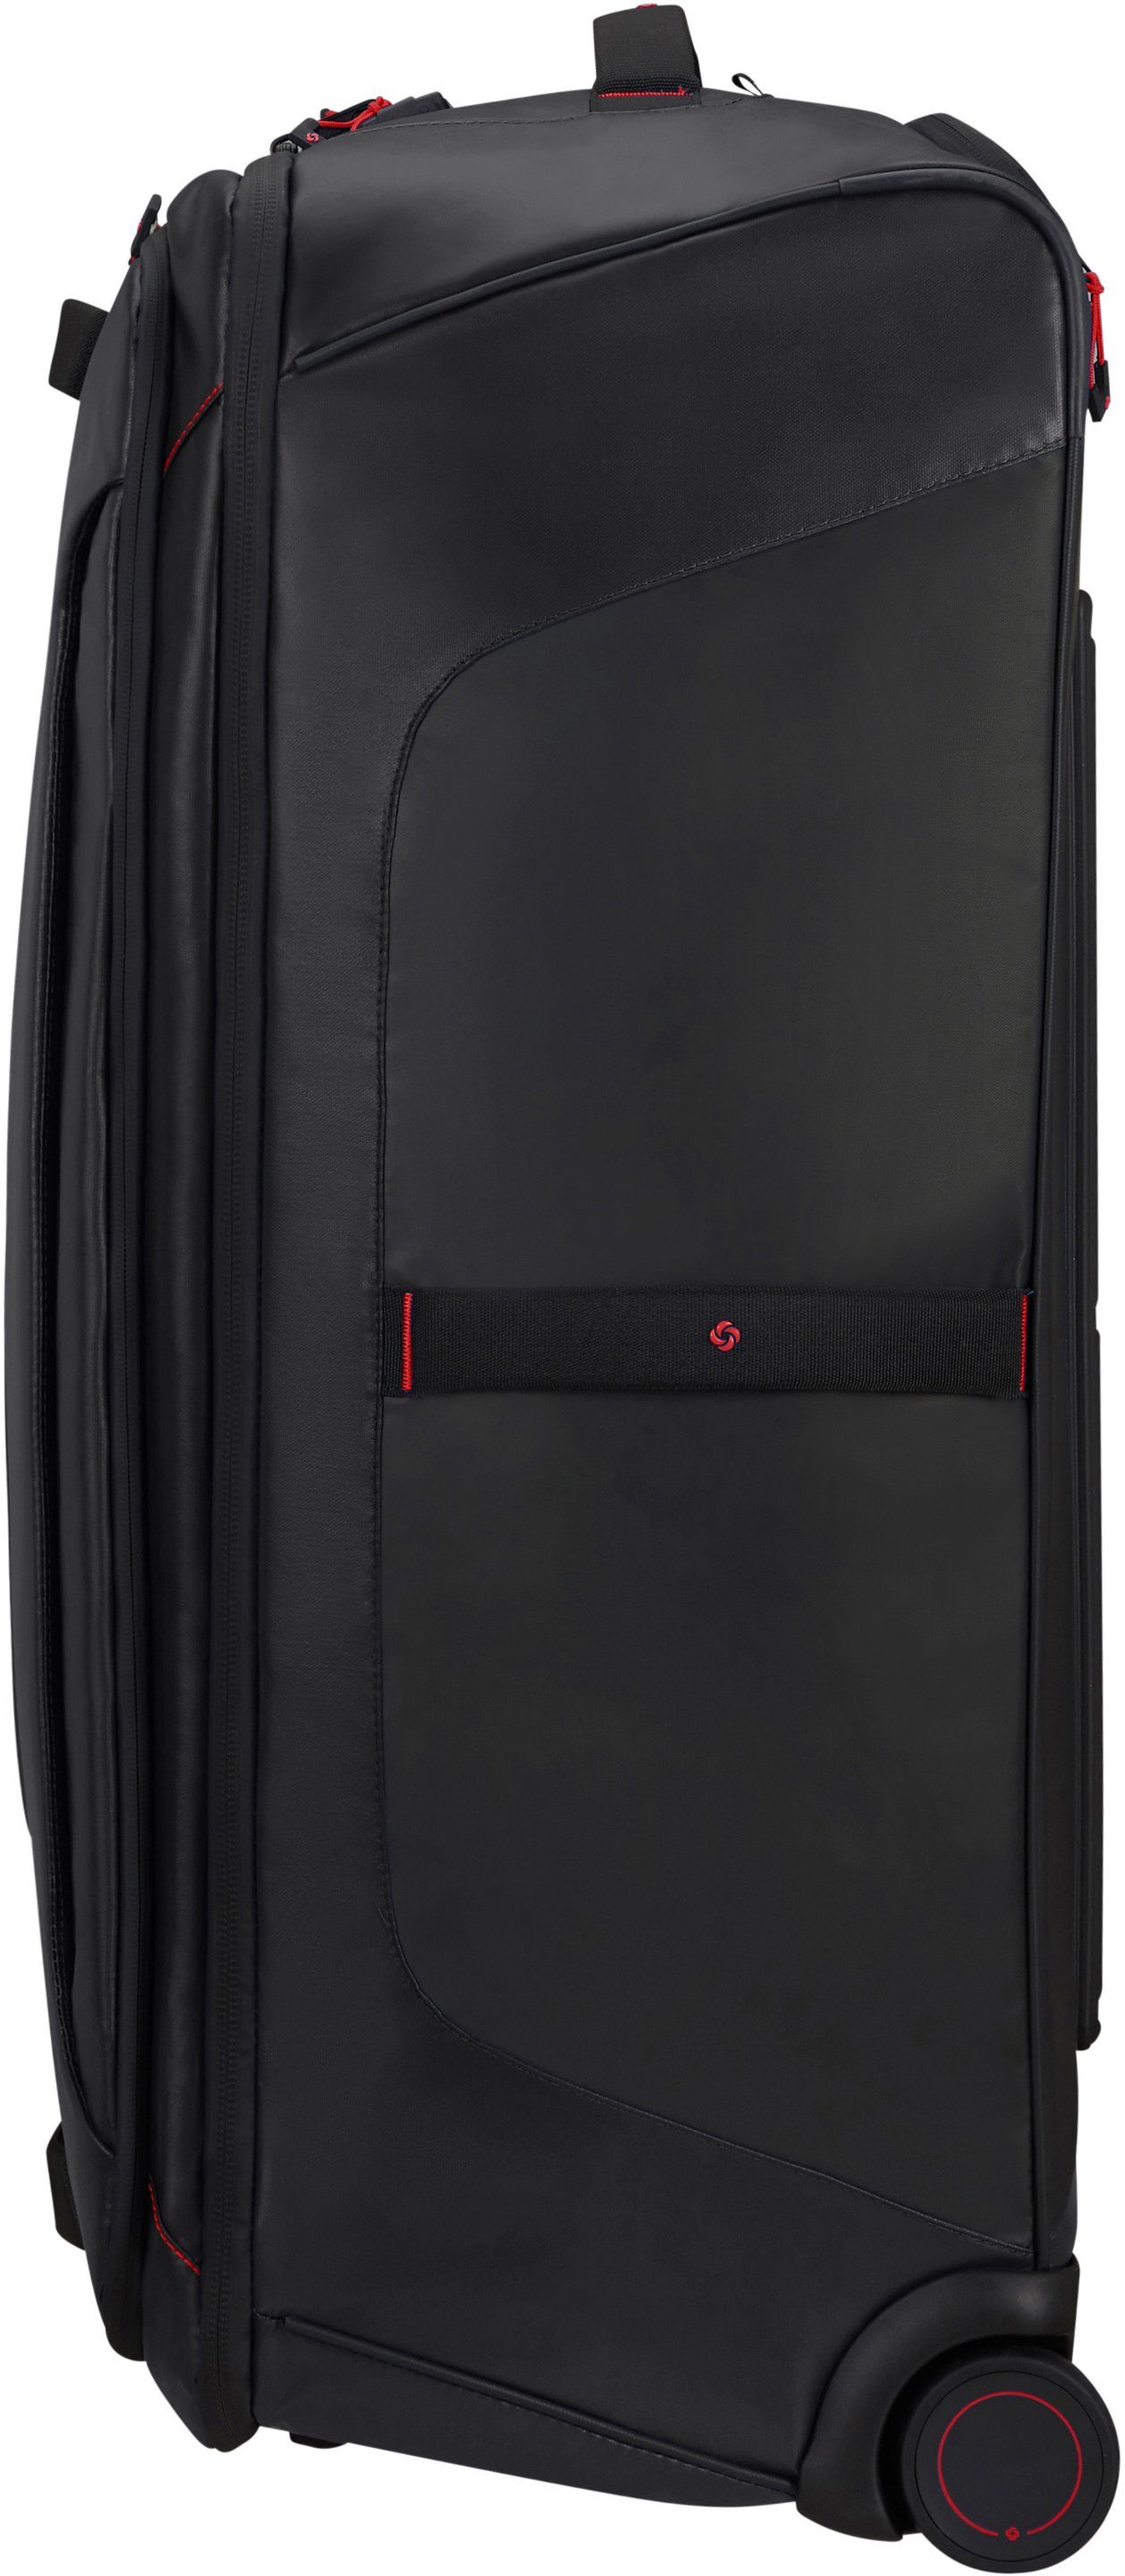 Samsonite Reisetasche Ecodiver, 79 cm, aus Trolley- und recyceltem teilweise Black, mit Material Rucksackfunktion